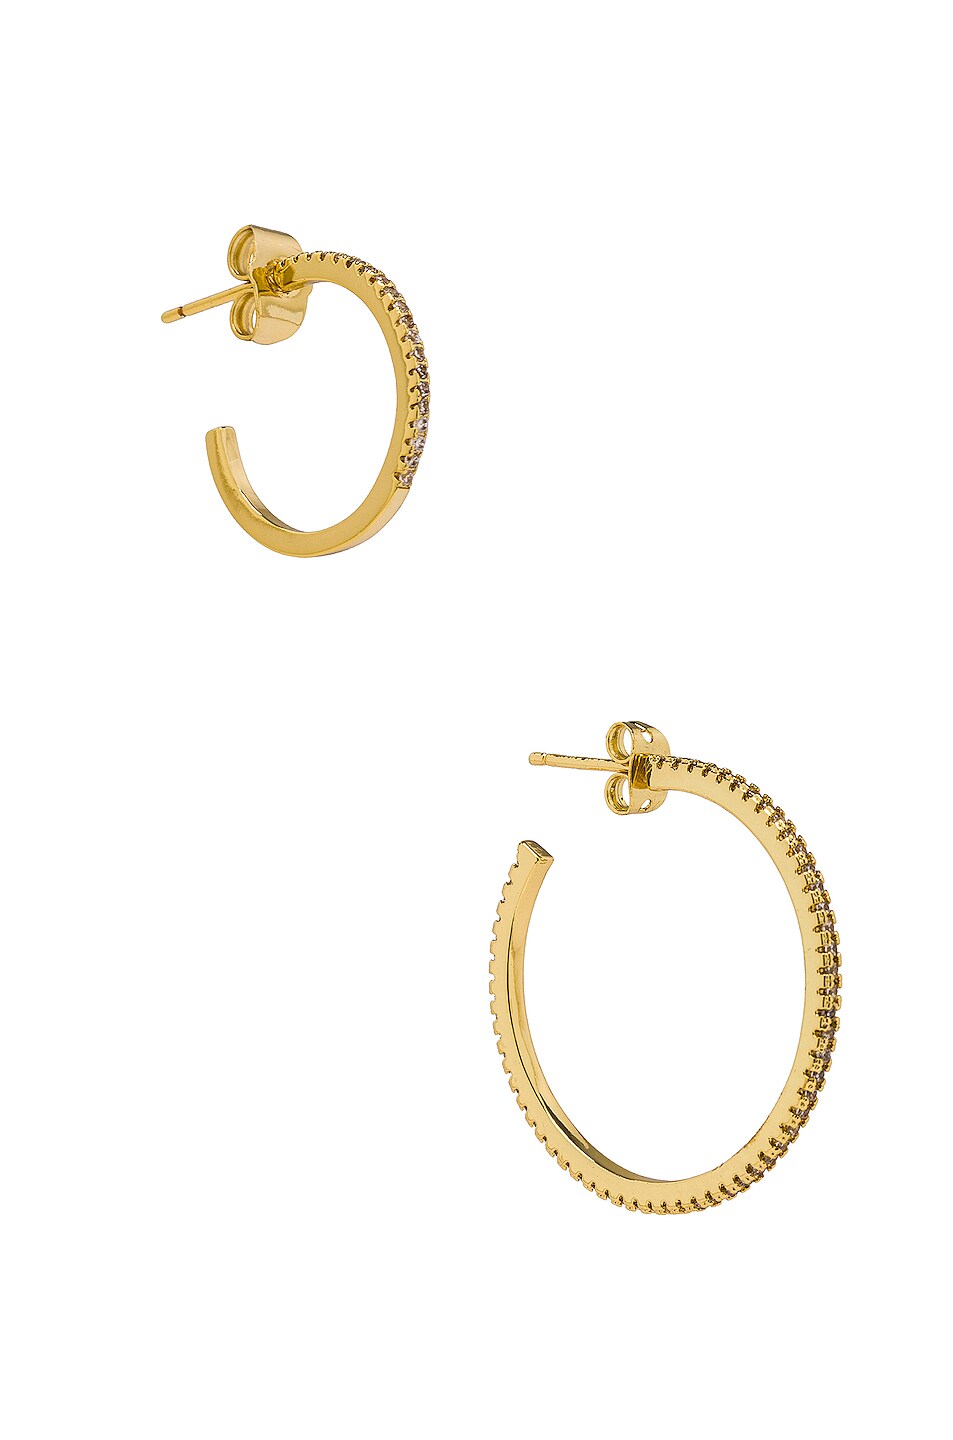 Jordan Road Jewelry Venice Earring Set in Gold | FWRD